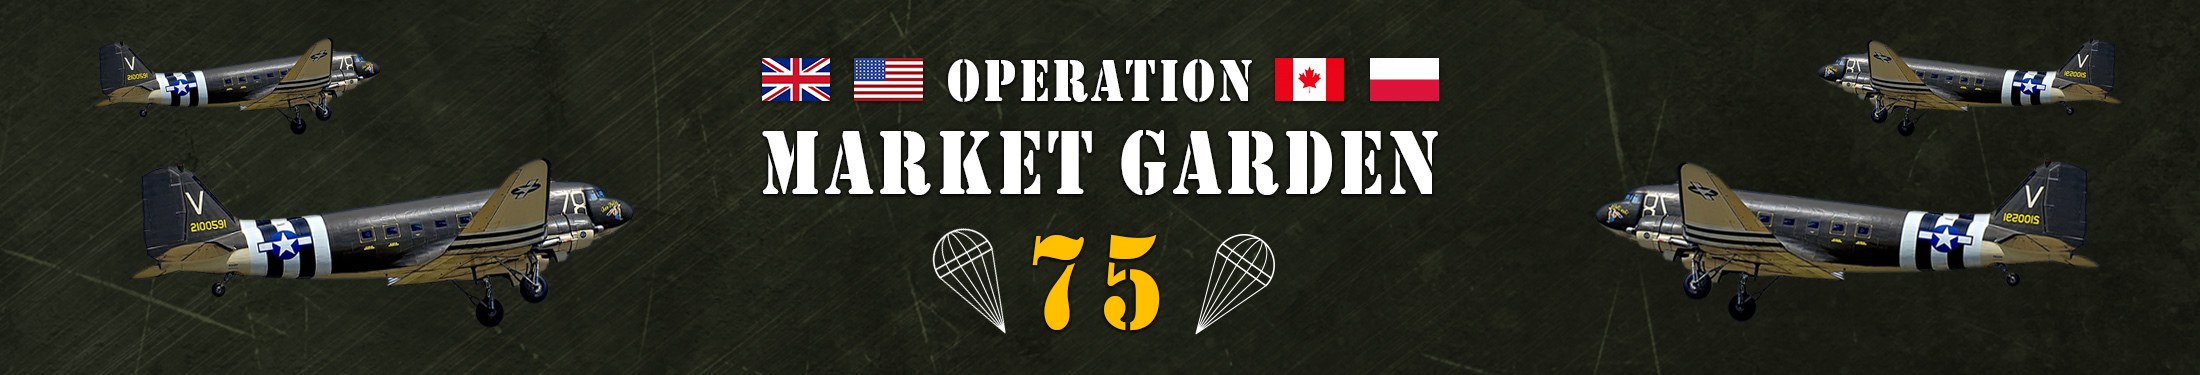 Market Garden 75 jaar